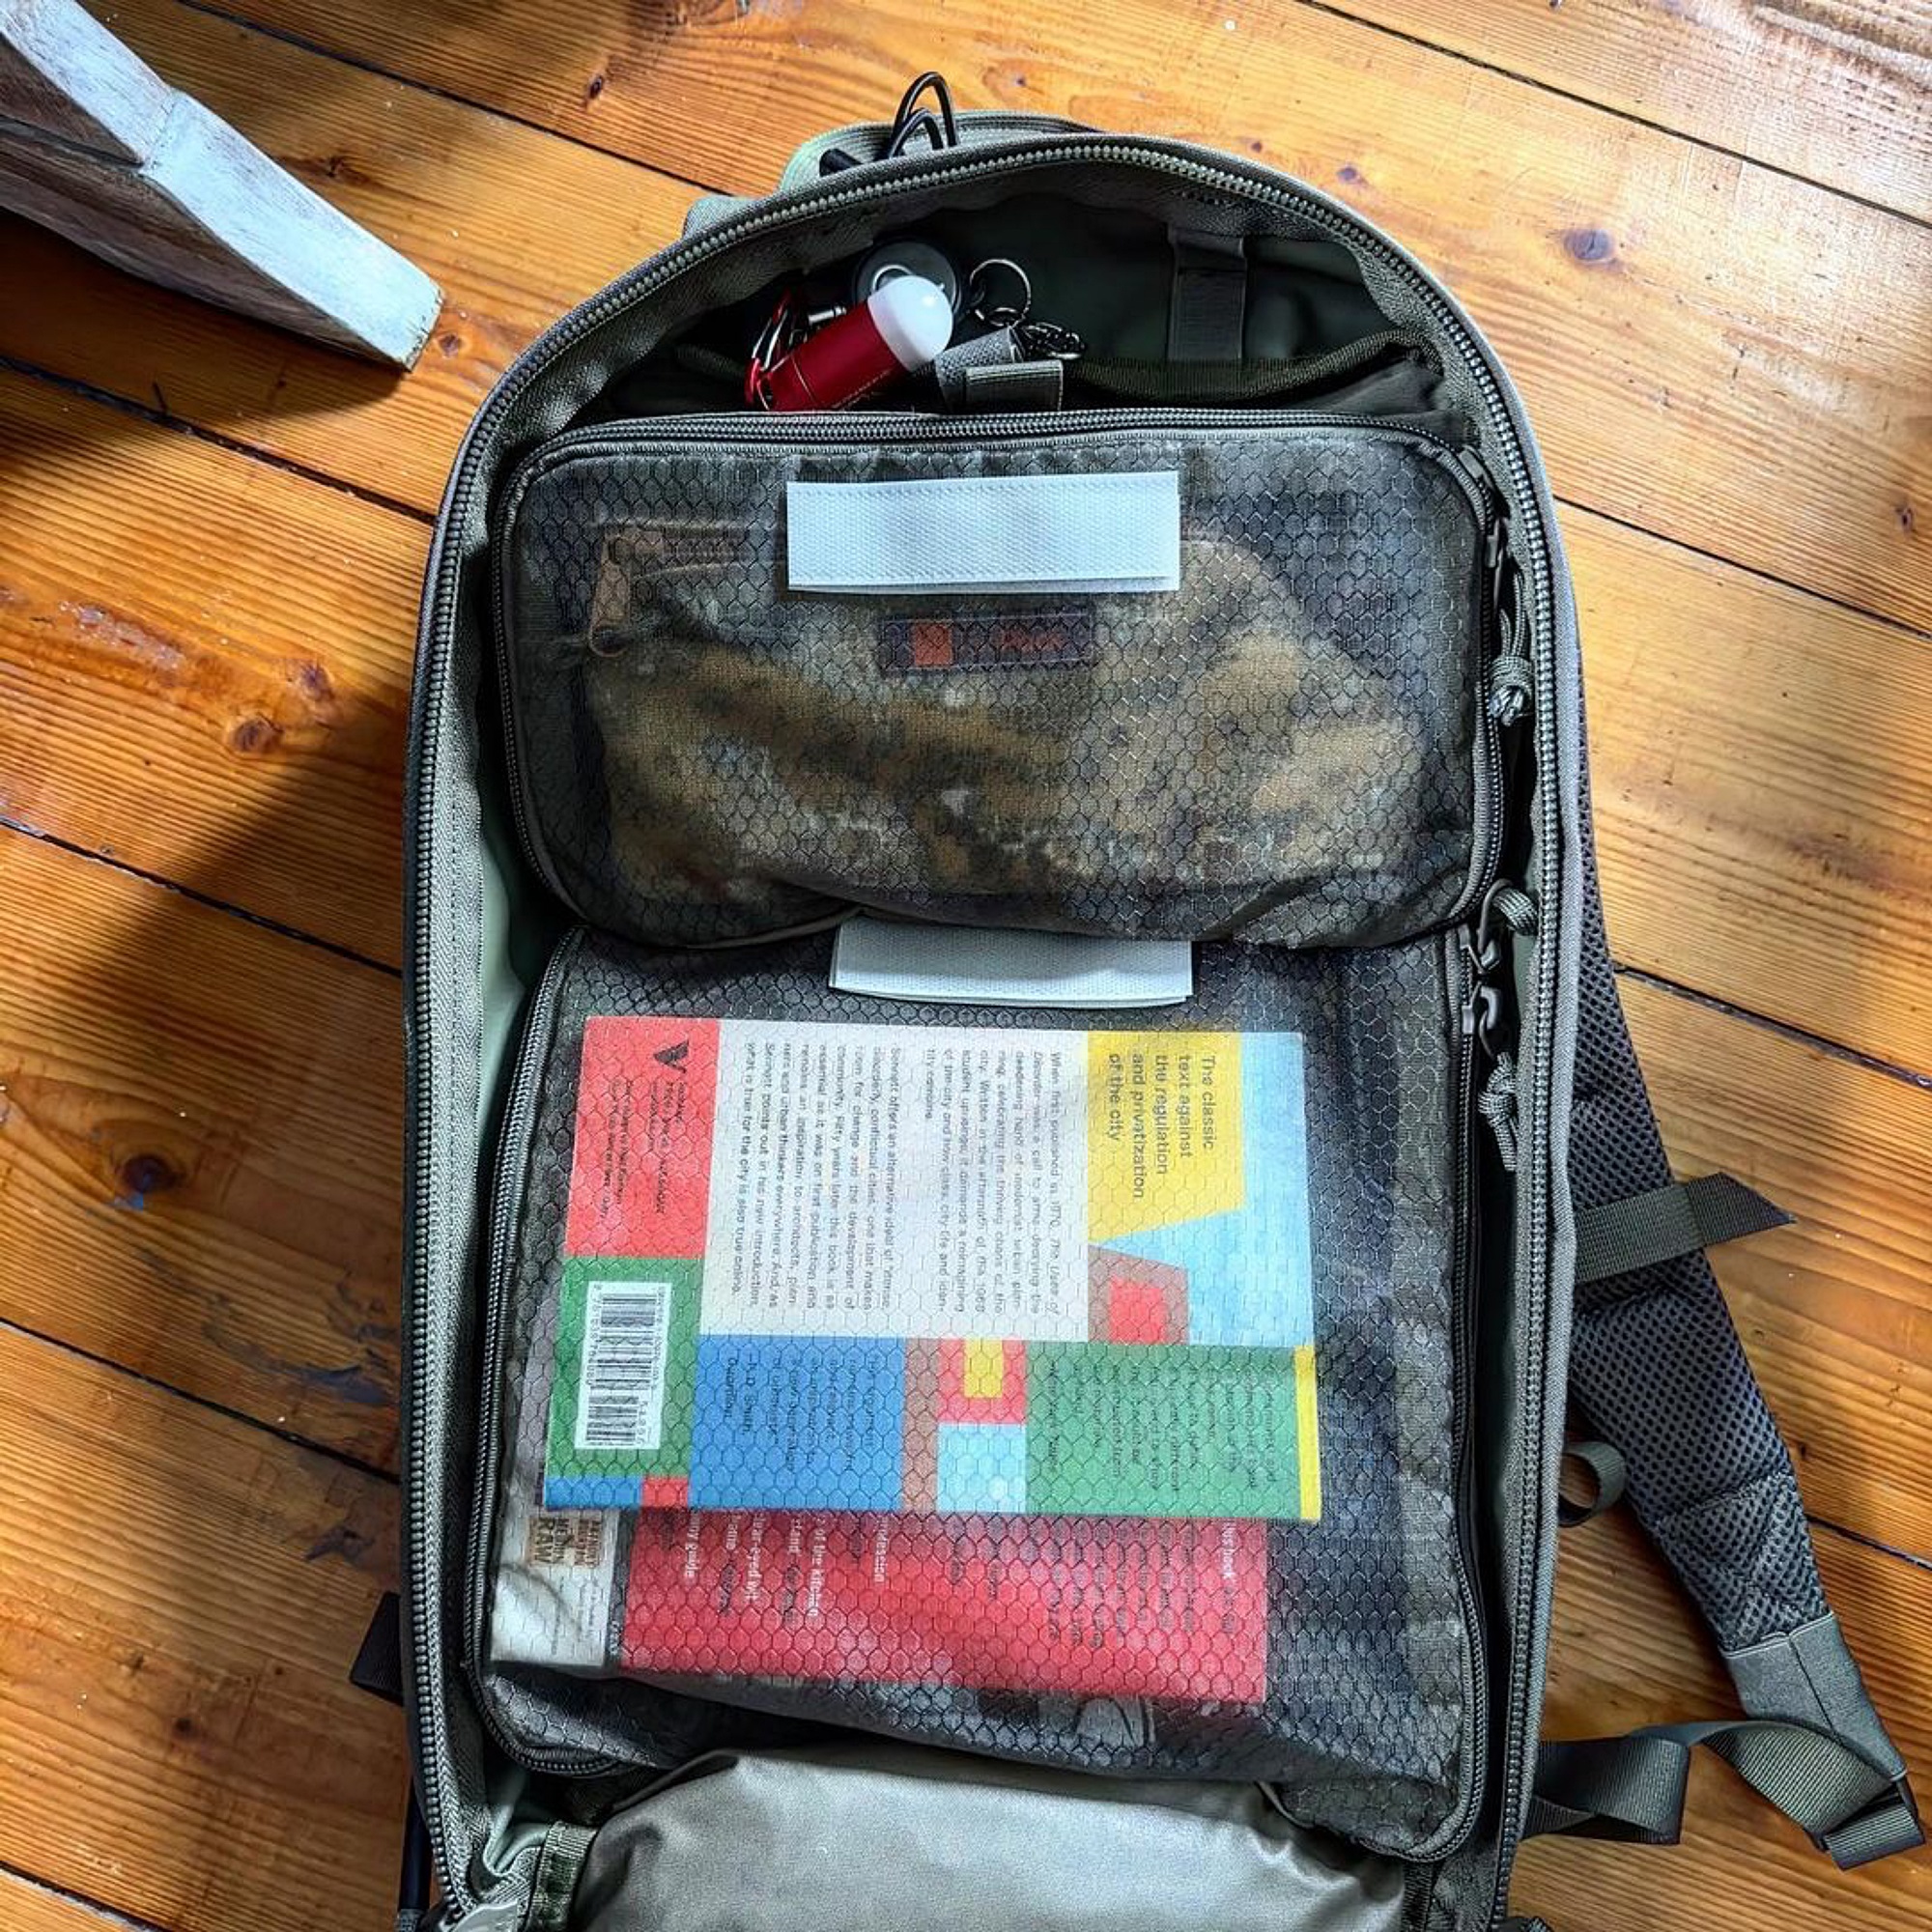 The Tasmanian Tiger TT Survival Bag